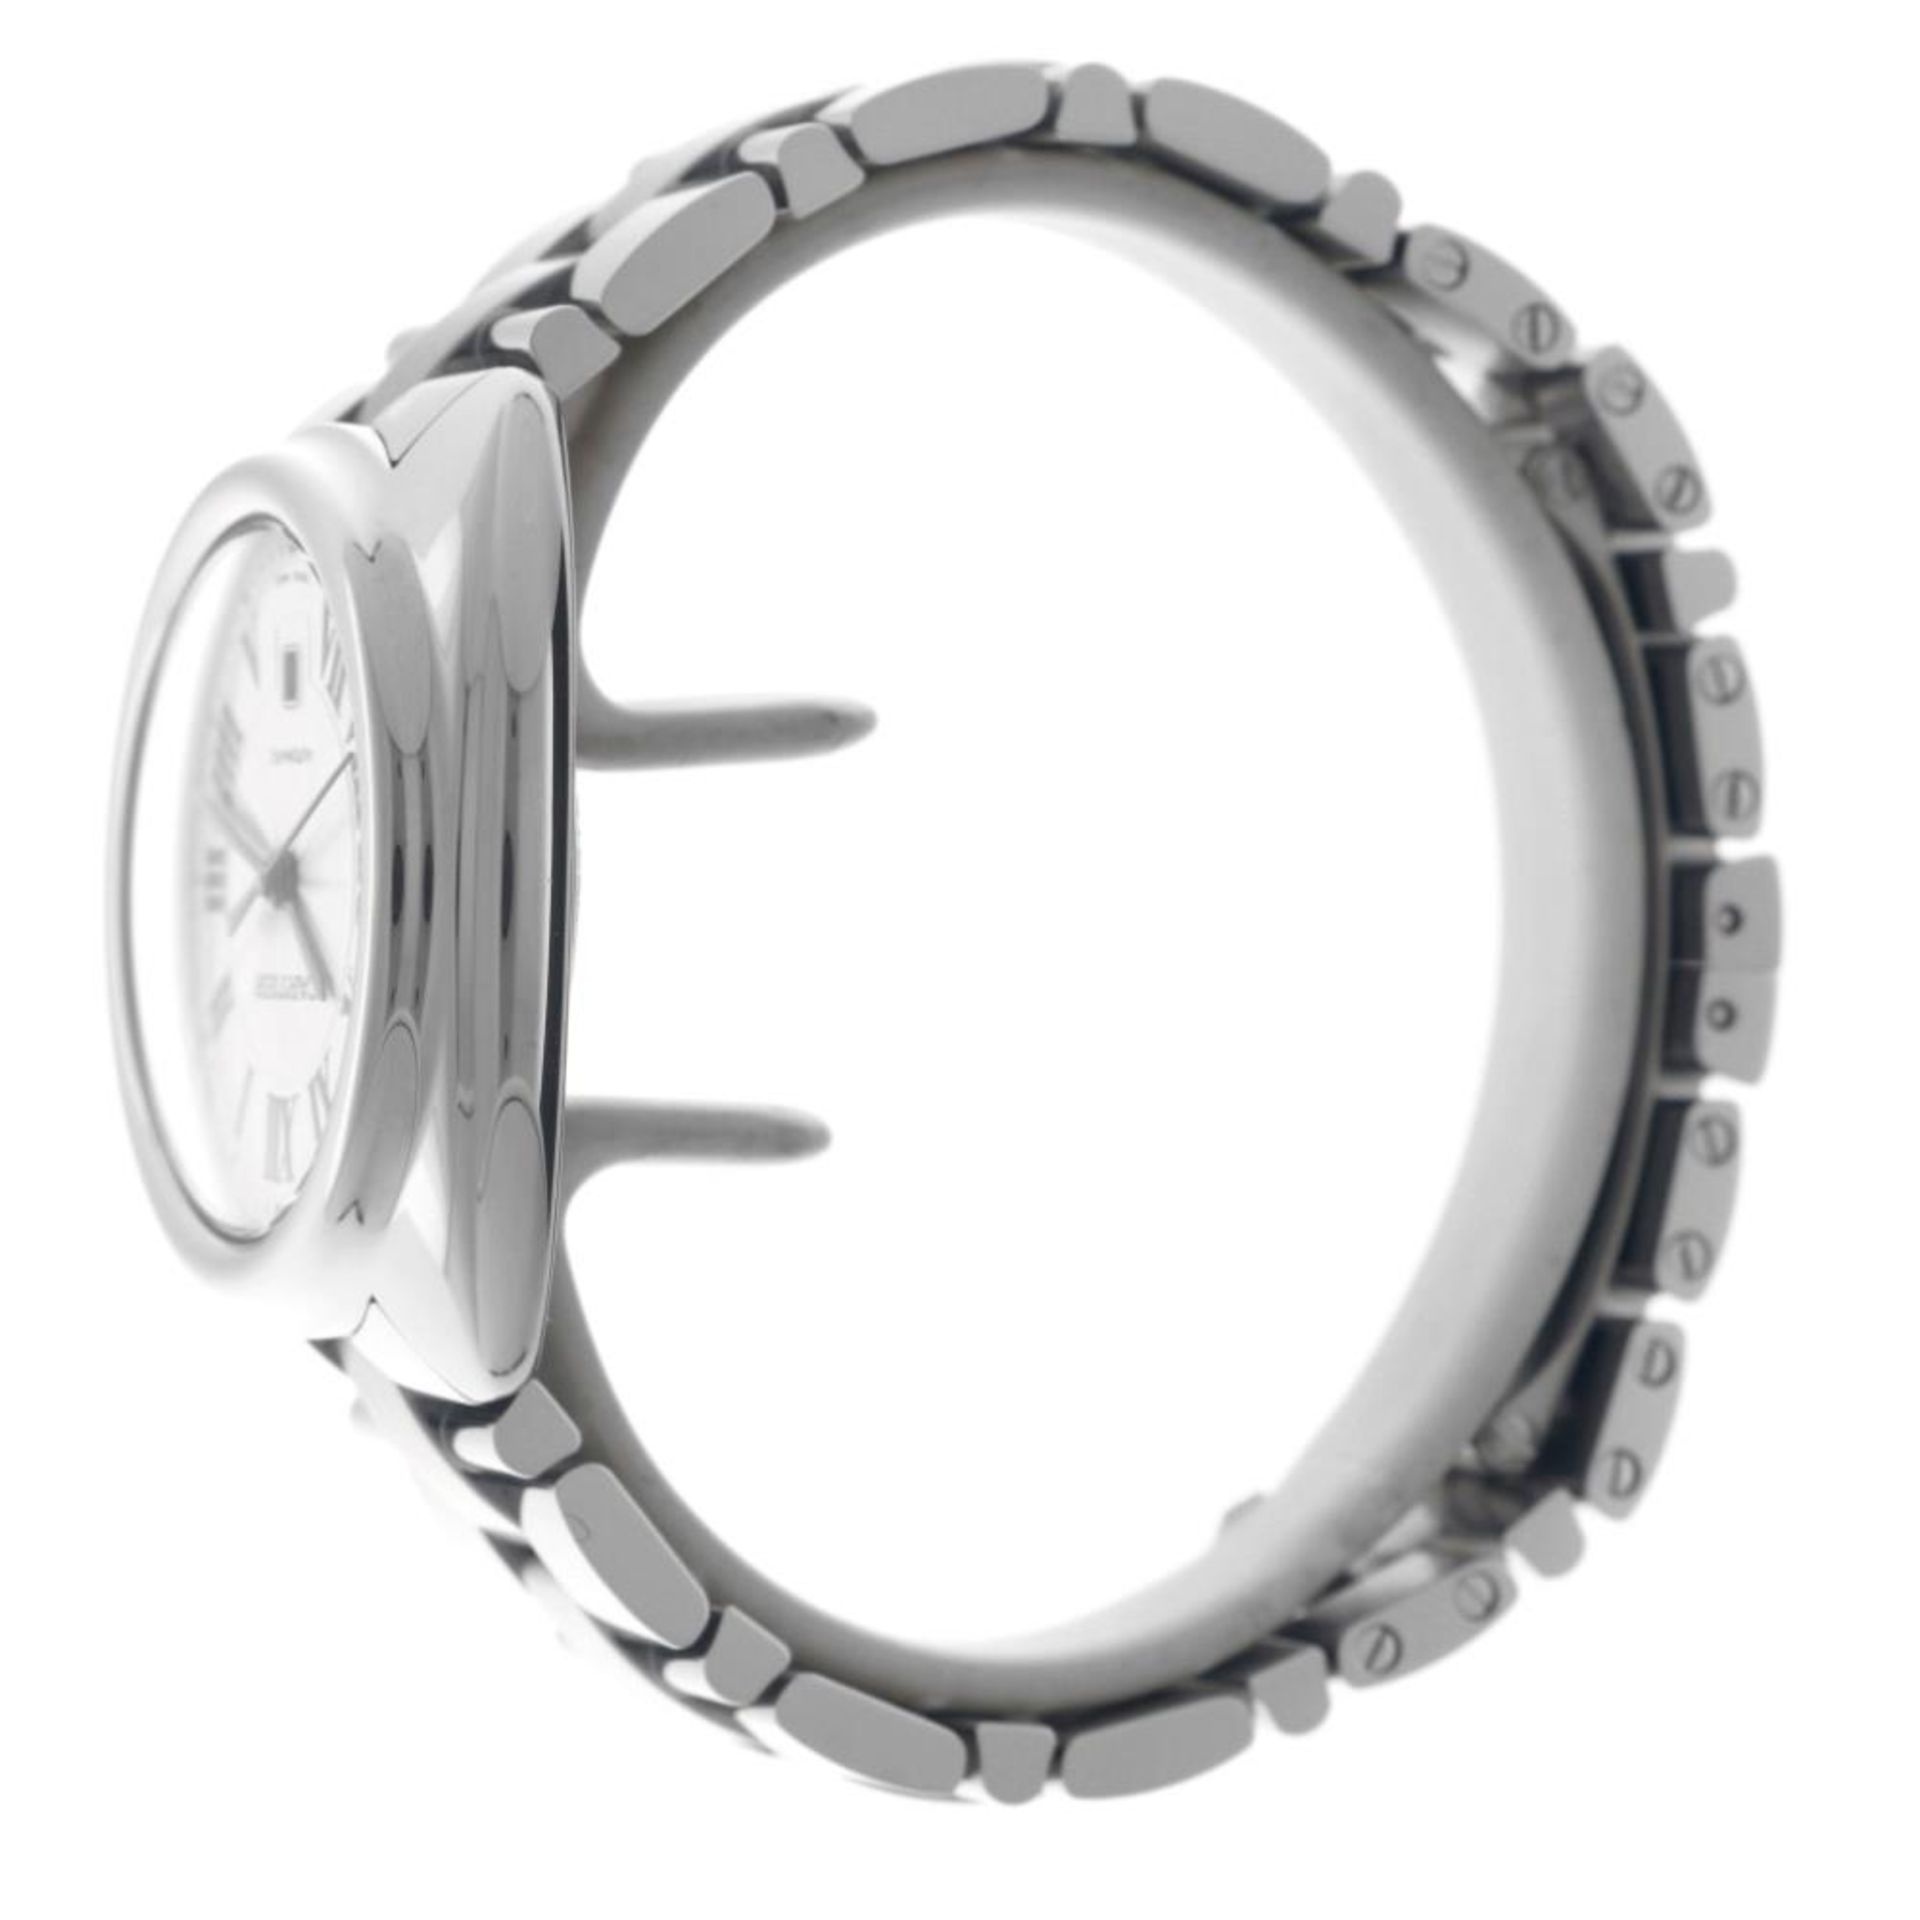 Cartier Clé WSCL0005 - Men's watch - 2020. - Image 11 of 12